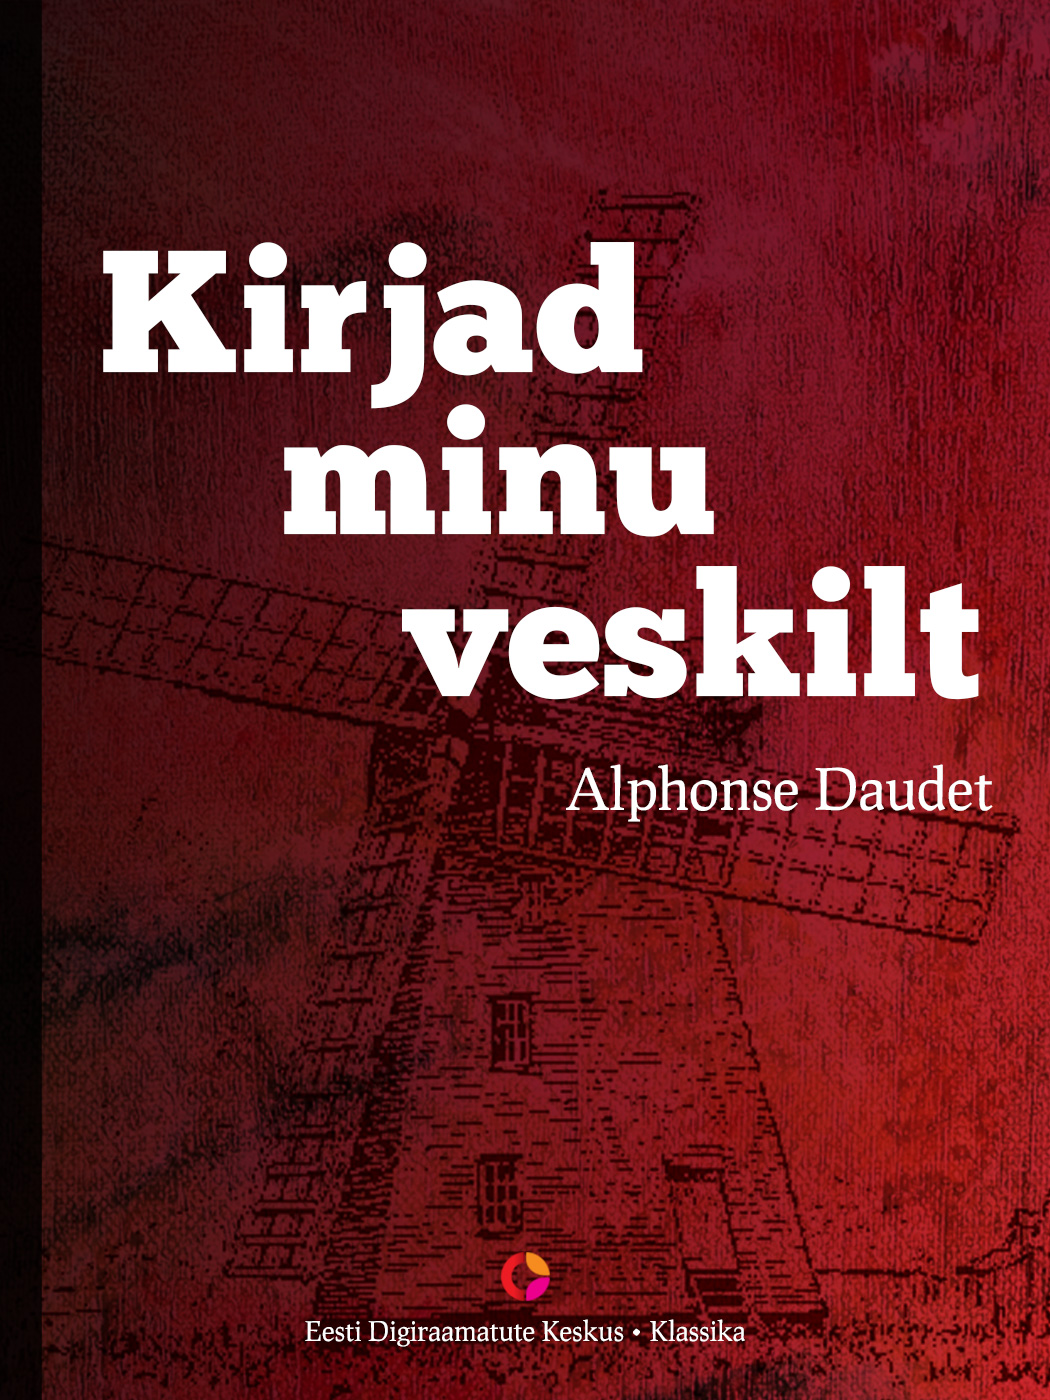 Книга Kirjad minu veskilt из серии , созданная Alphonse Daudet, может относится к жанру Зарубежная классика, Классическая проза. Стоимость электронной книги Kirjad minu veskilt с идентификатором 21184492 составляет 512.72 руб.